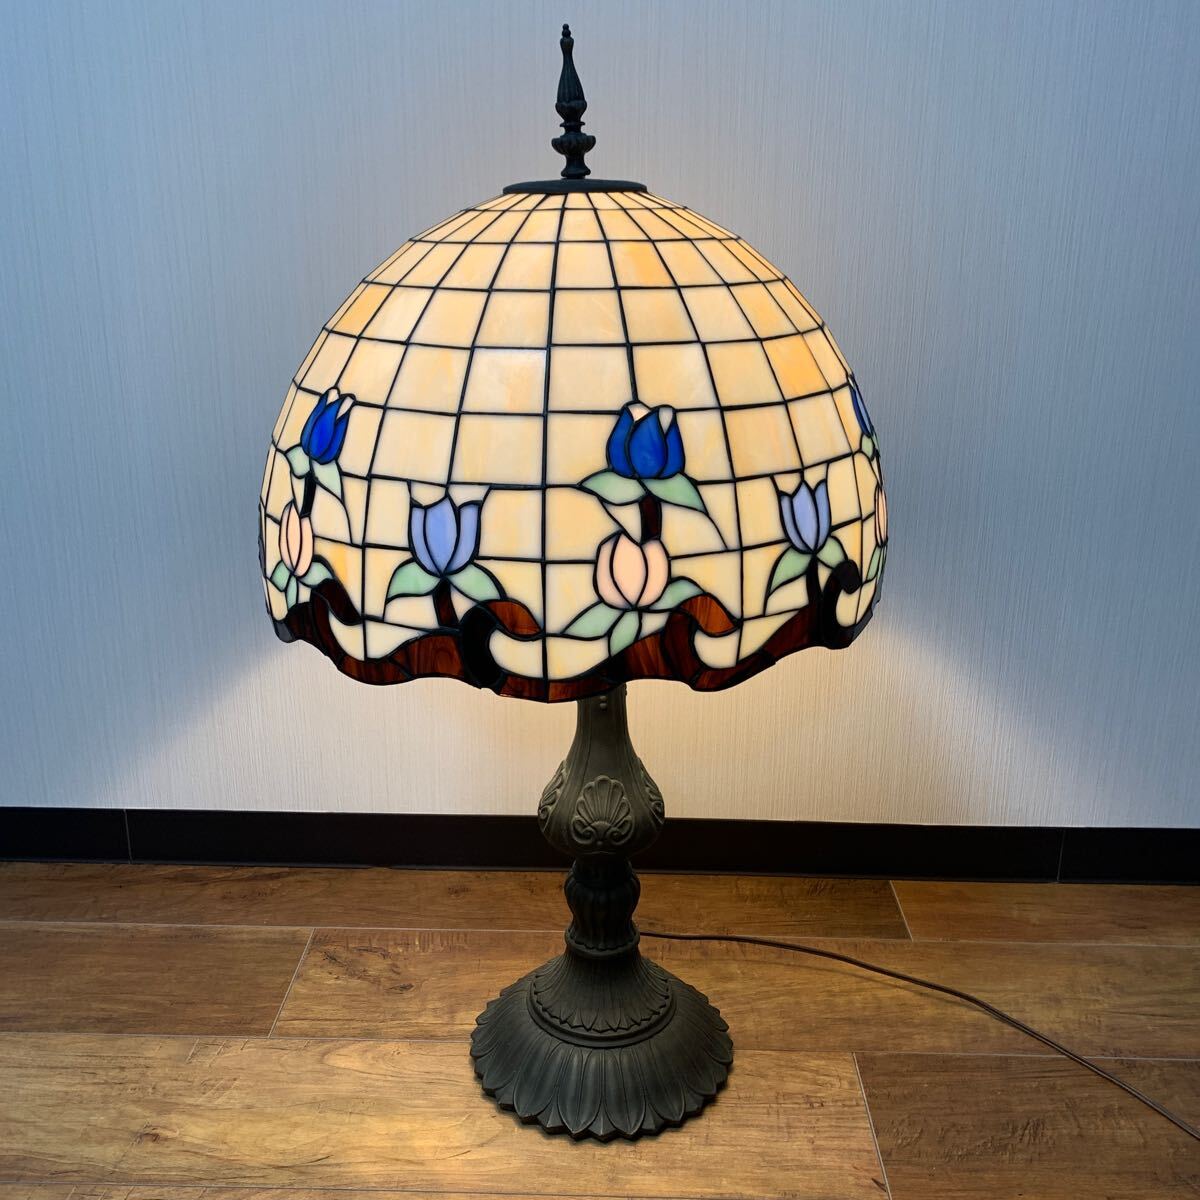 ステンドグラス ステンドランプ 卓上ランプ ランプ アンティーク 花柄 レトロな雰囲気がおしゃれ 間接照明 ベッド 寝室 中古 40×40×75